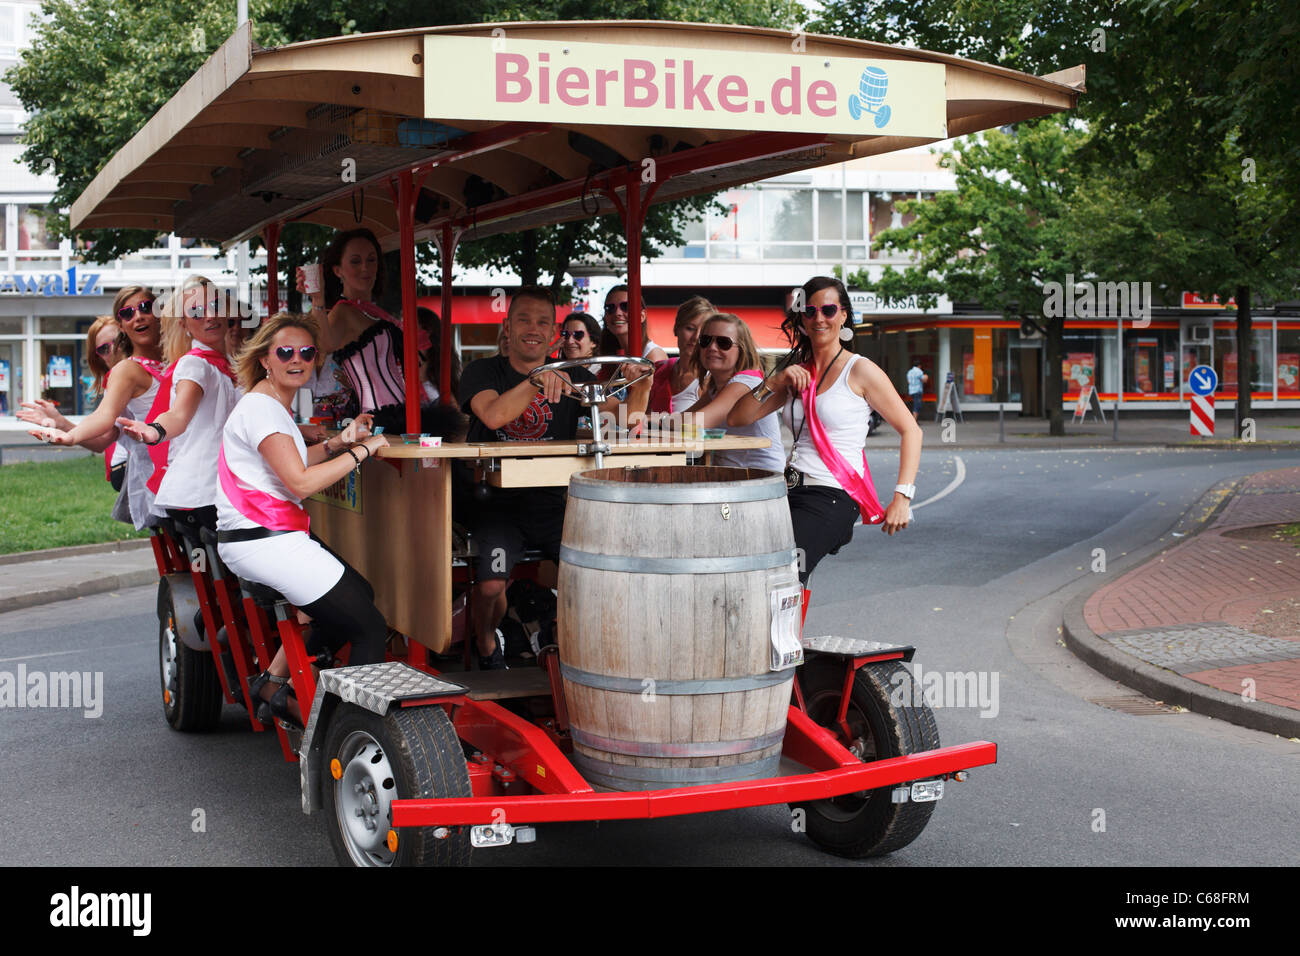 Junge Frauen pedal ein Bier-Bike in Hannover. Stockfoto